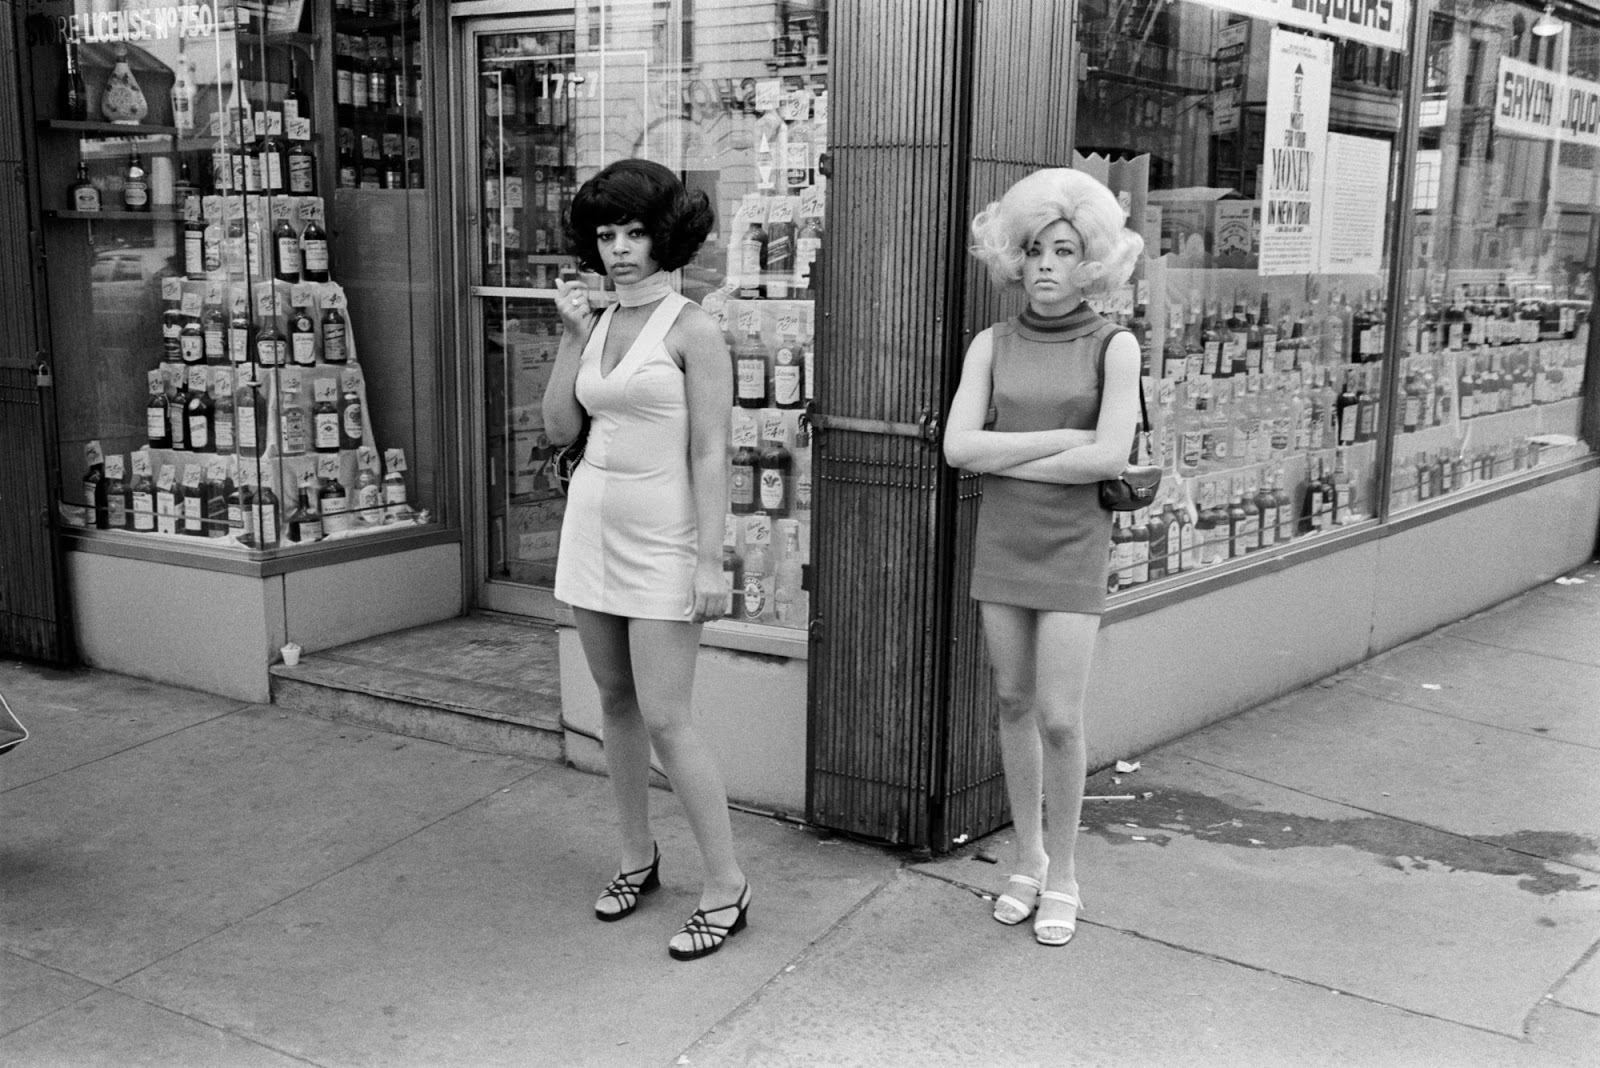 Бомжи, проповедники и проститутки: улицы Нью-Йорка 70-х - Эт